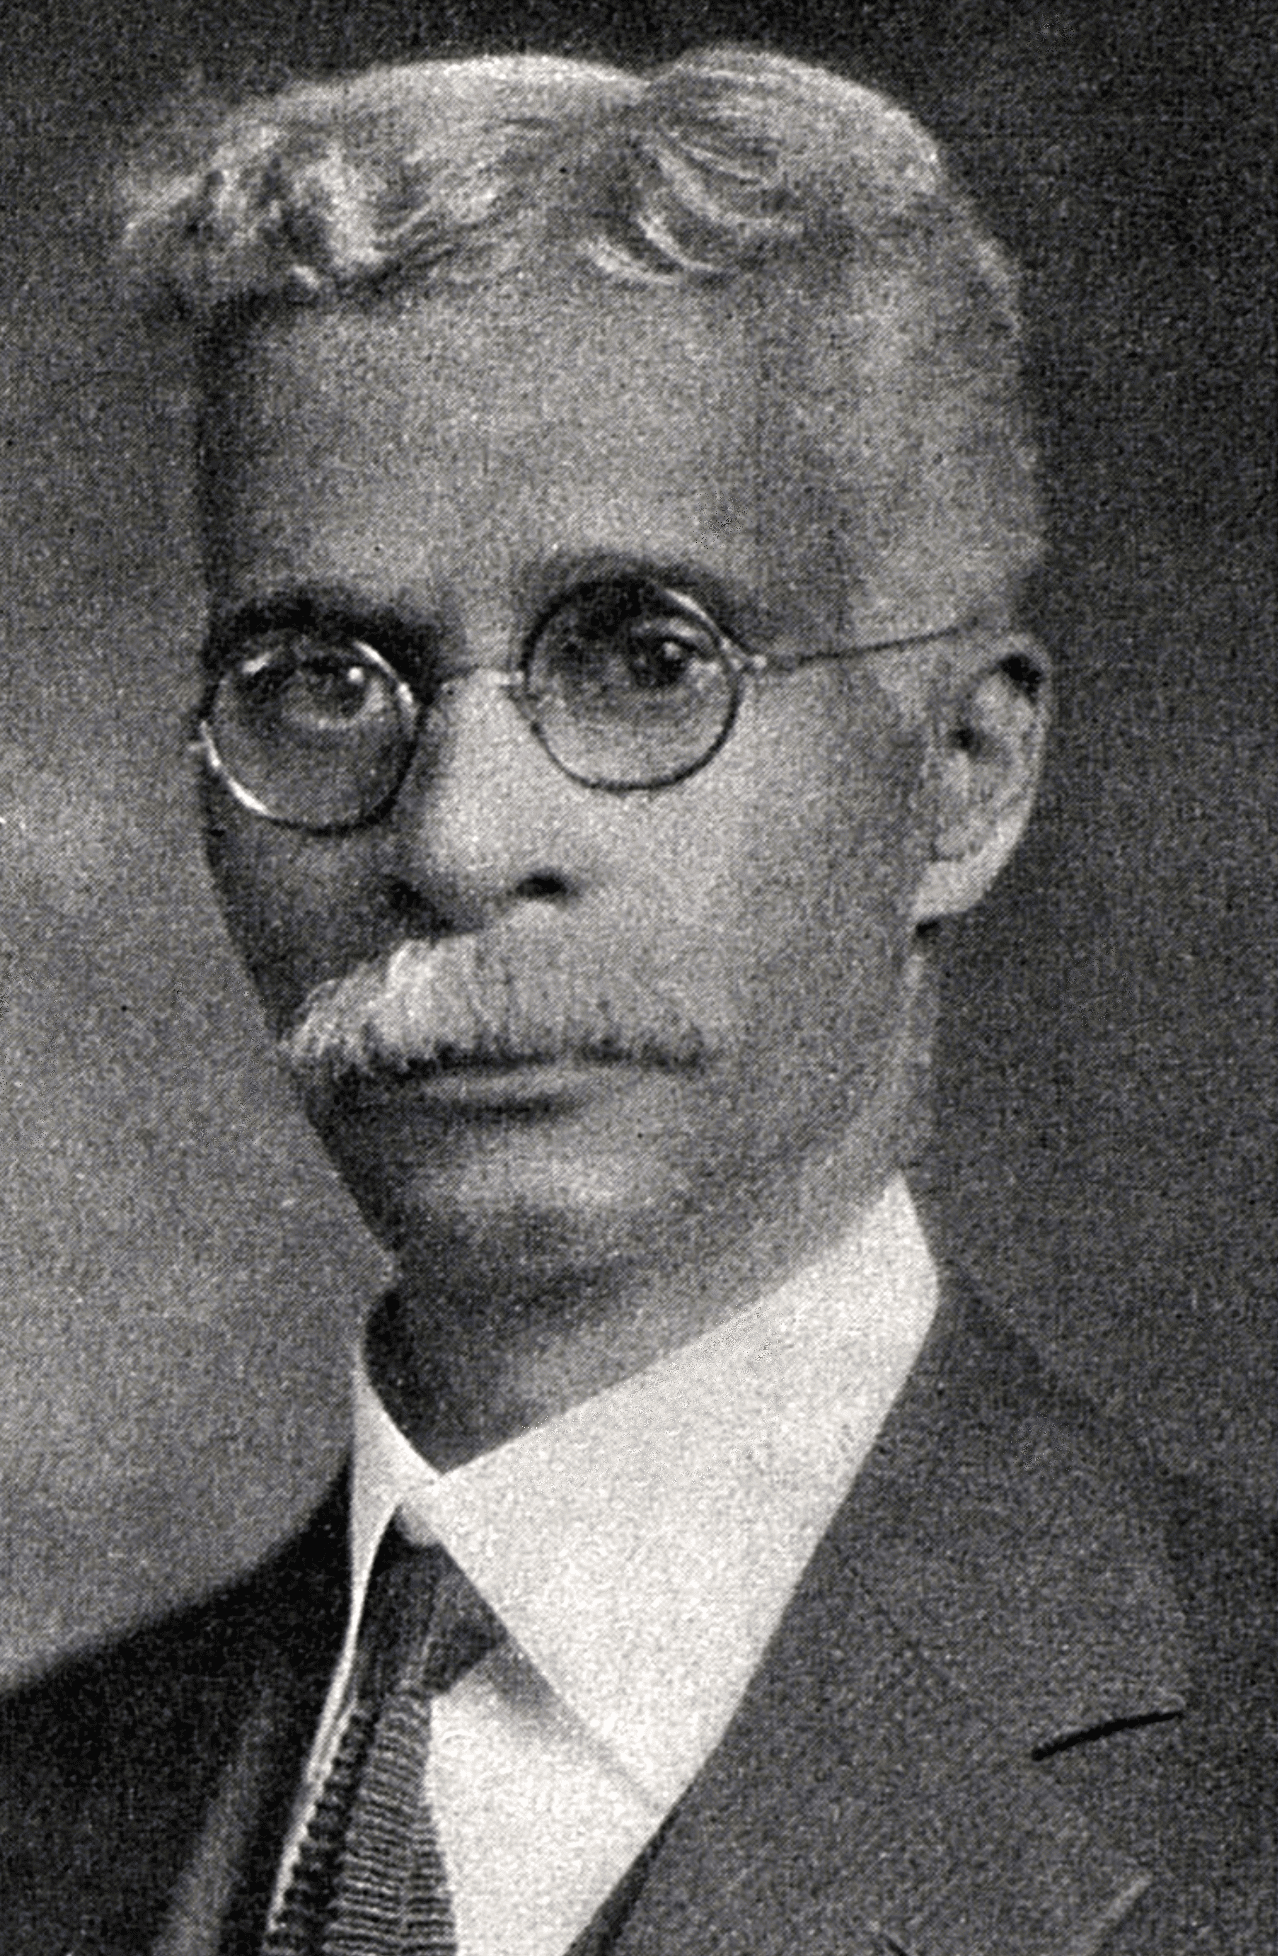 (1888 - 1935)